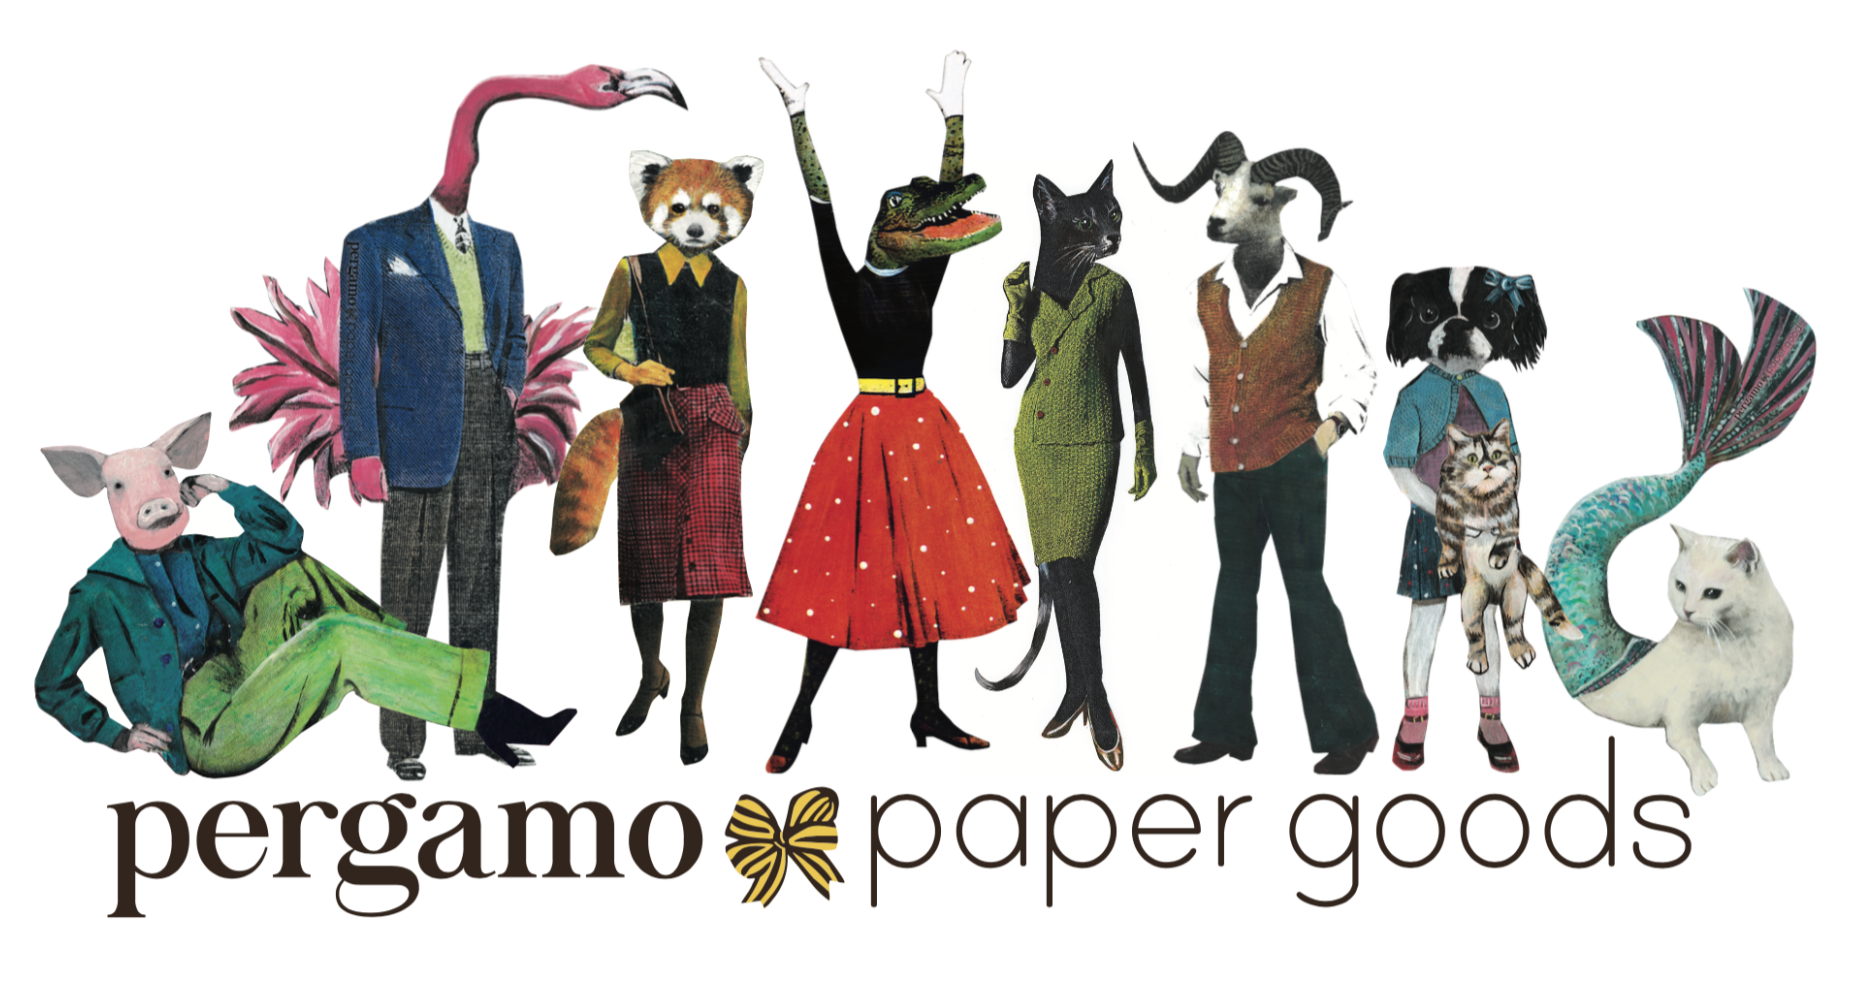 Pergamo Paper Goods www.pergamopapergoods.com